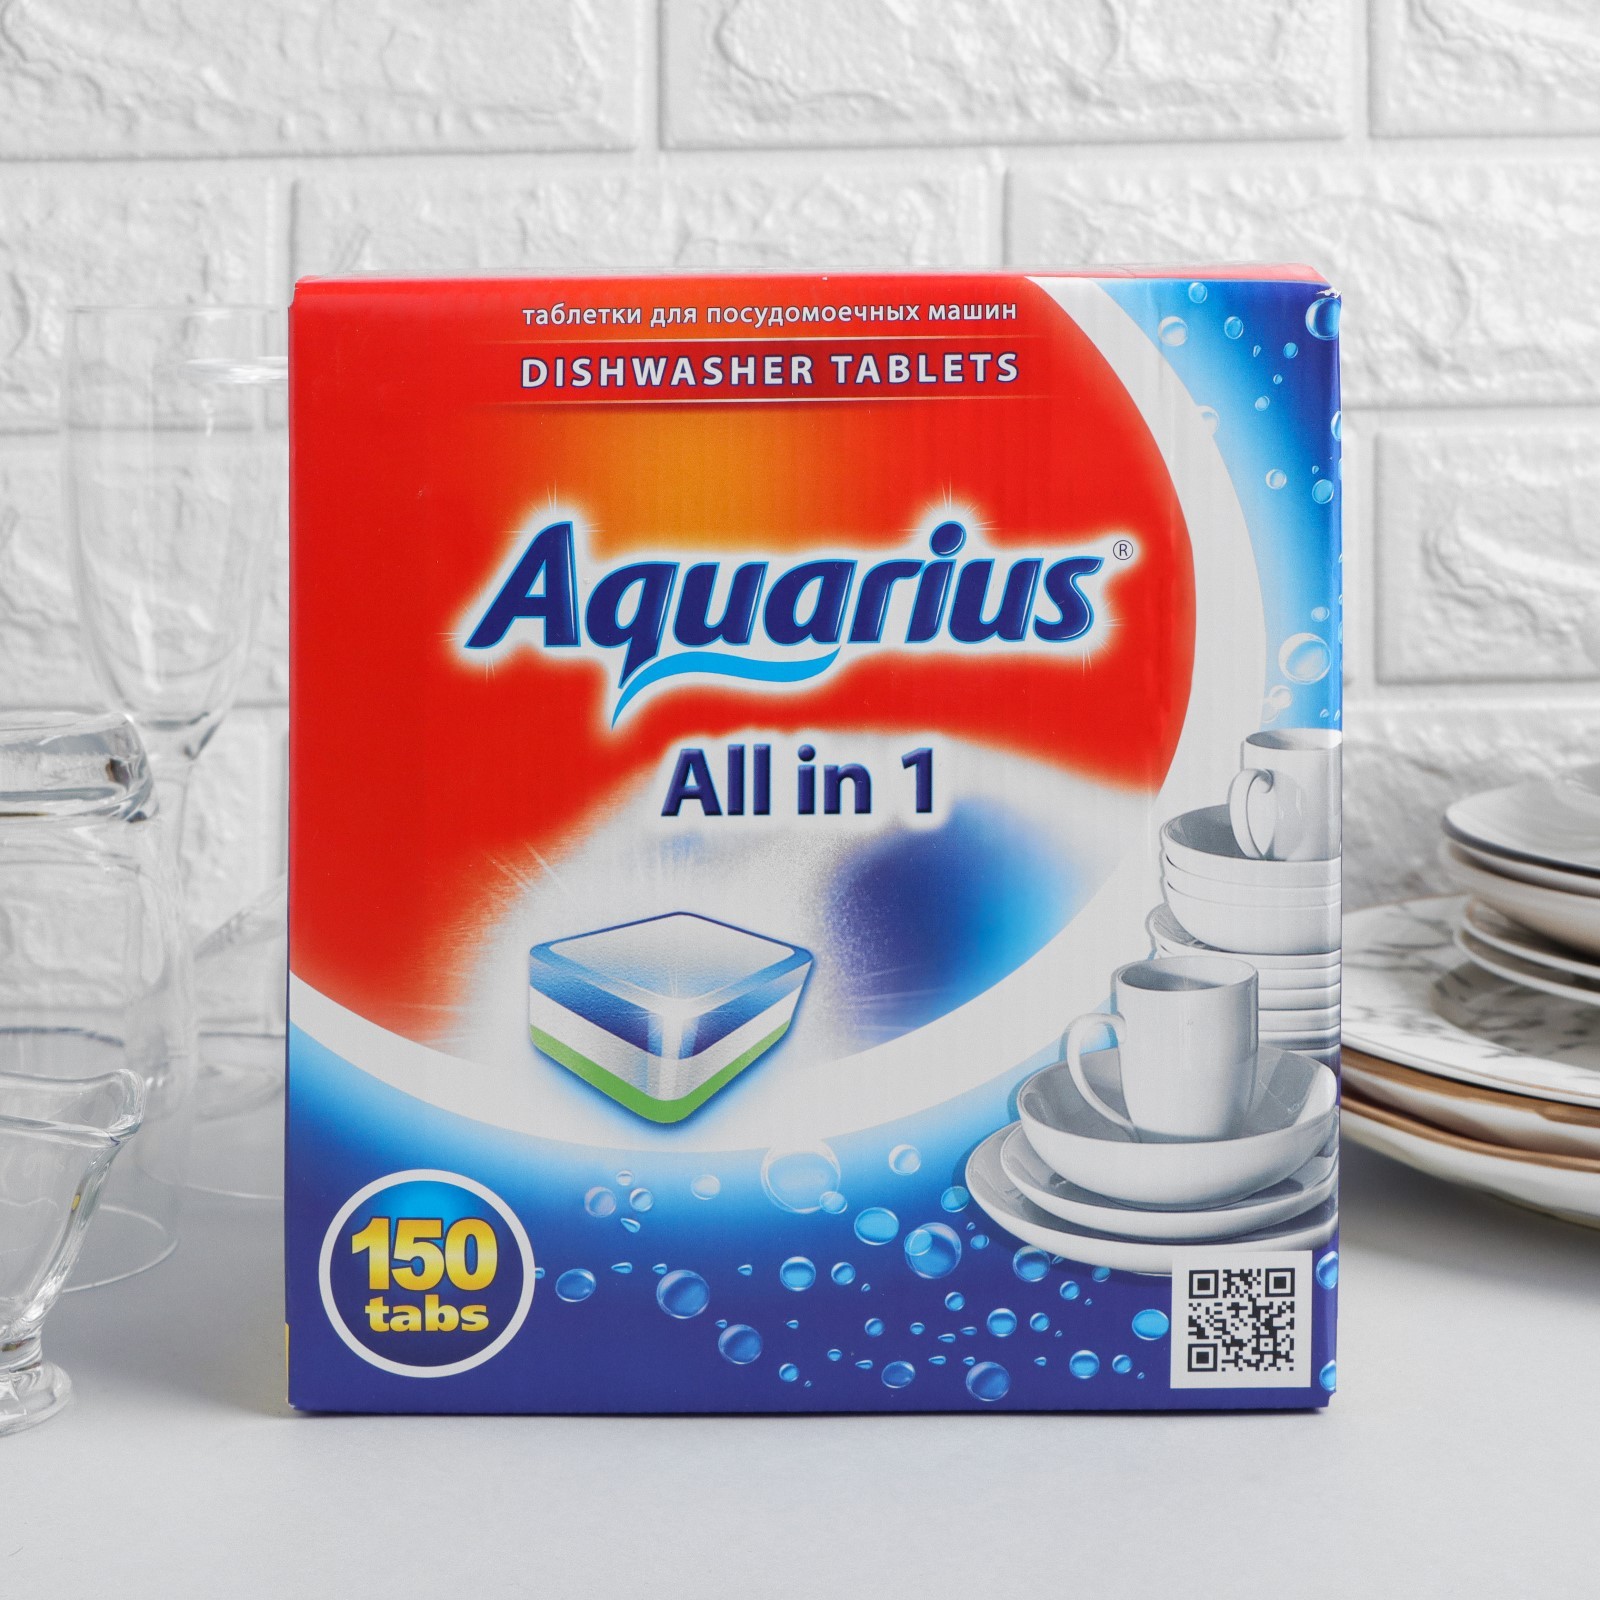 Таблетки для посудомоечной машинки. Таблетки для посудомоечных машин Aquarius all in 1, 60 шт. Aquarius all in 1 таблетки для посудомоечной машины. Aquarius all in 1 таблетка для посудомоек. Таблетки для ПММ "Aquarius" 150шт.